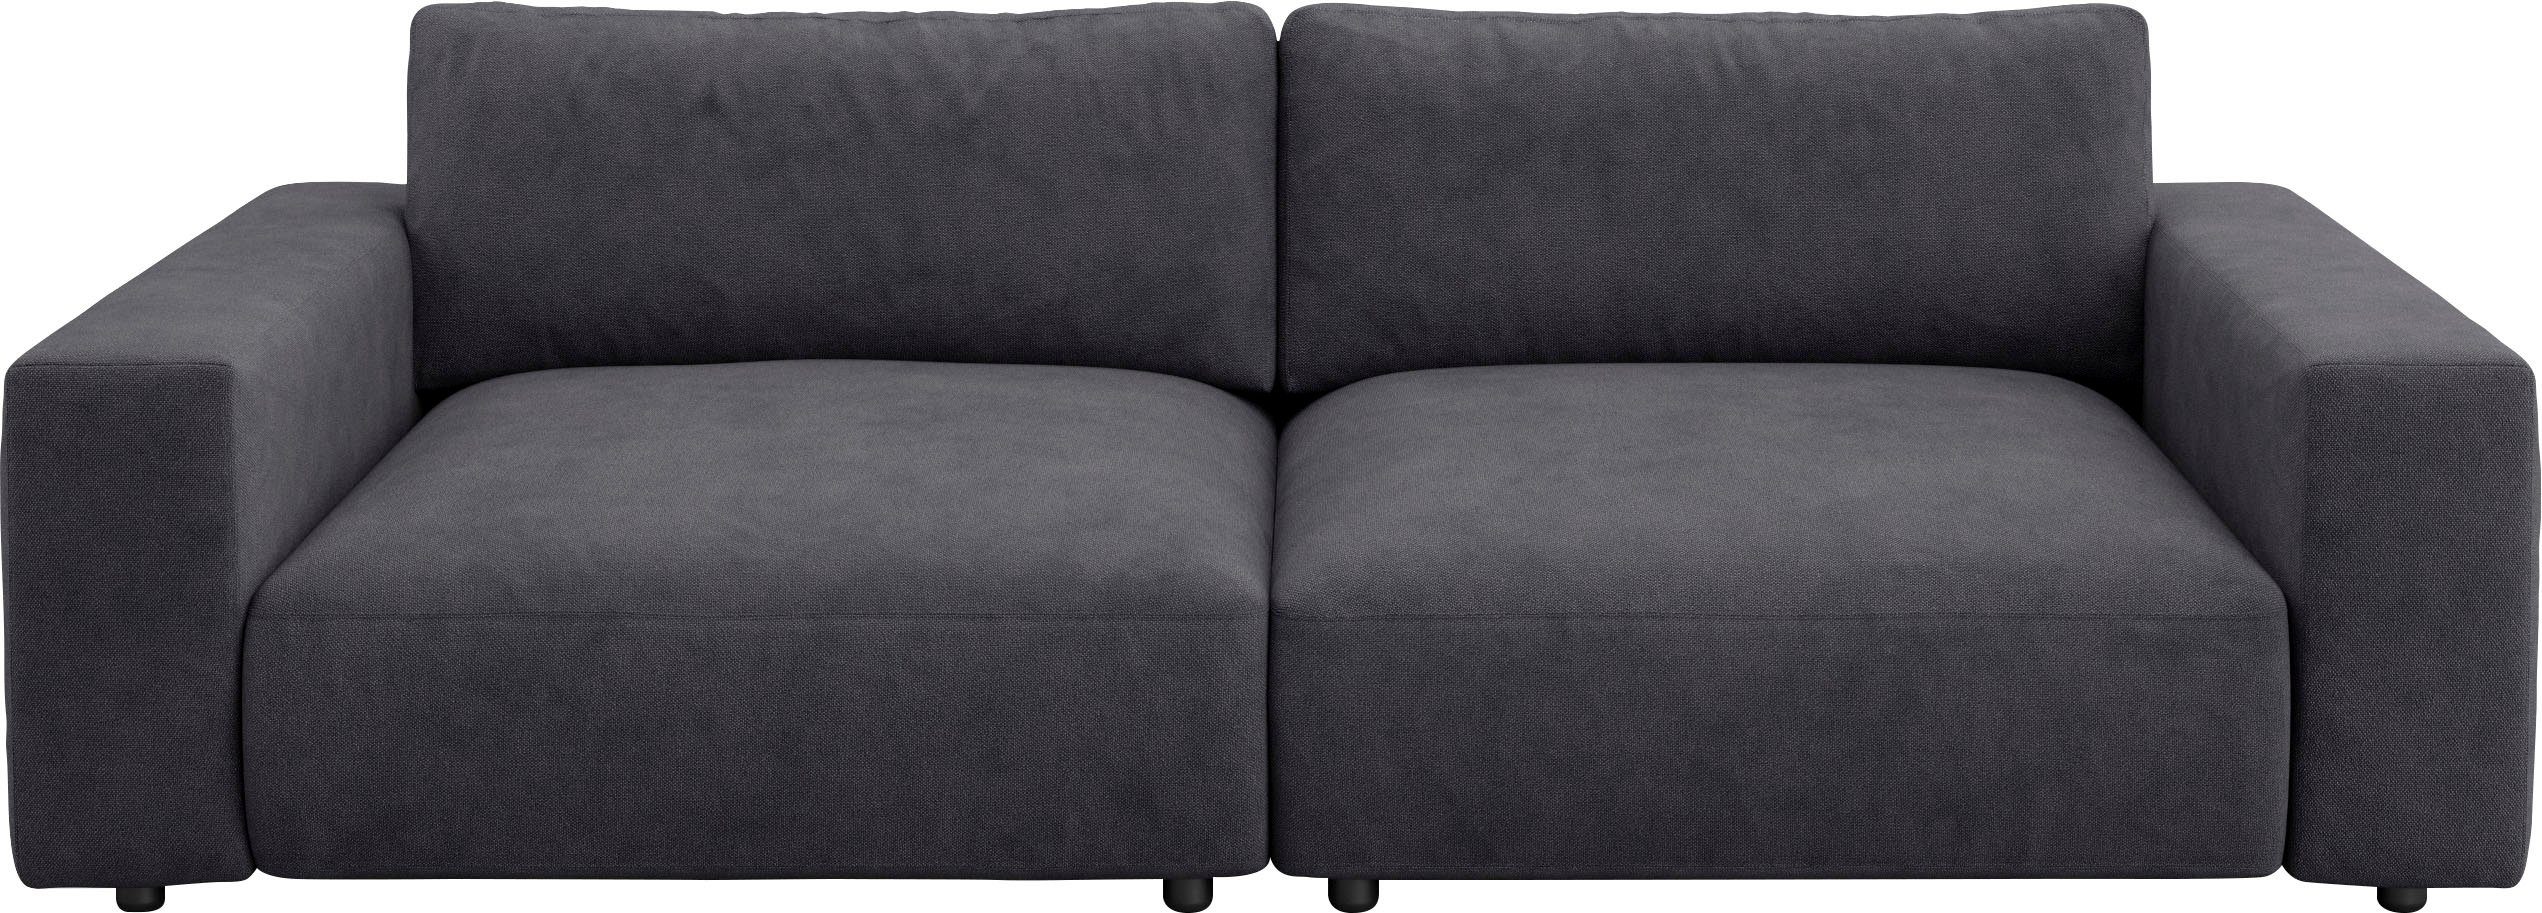 unterschiedlichen 2,5-Sitzer GALLERY LUCIA, Musterring in vielen Big-Sofa Nähten, by 4 und M Qualitäten branded